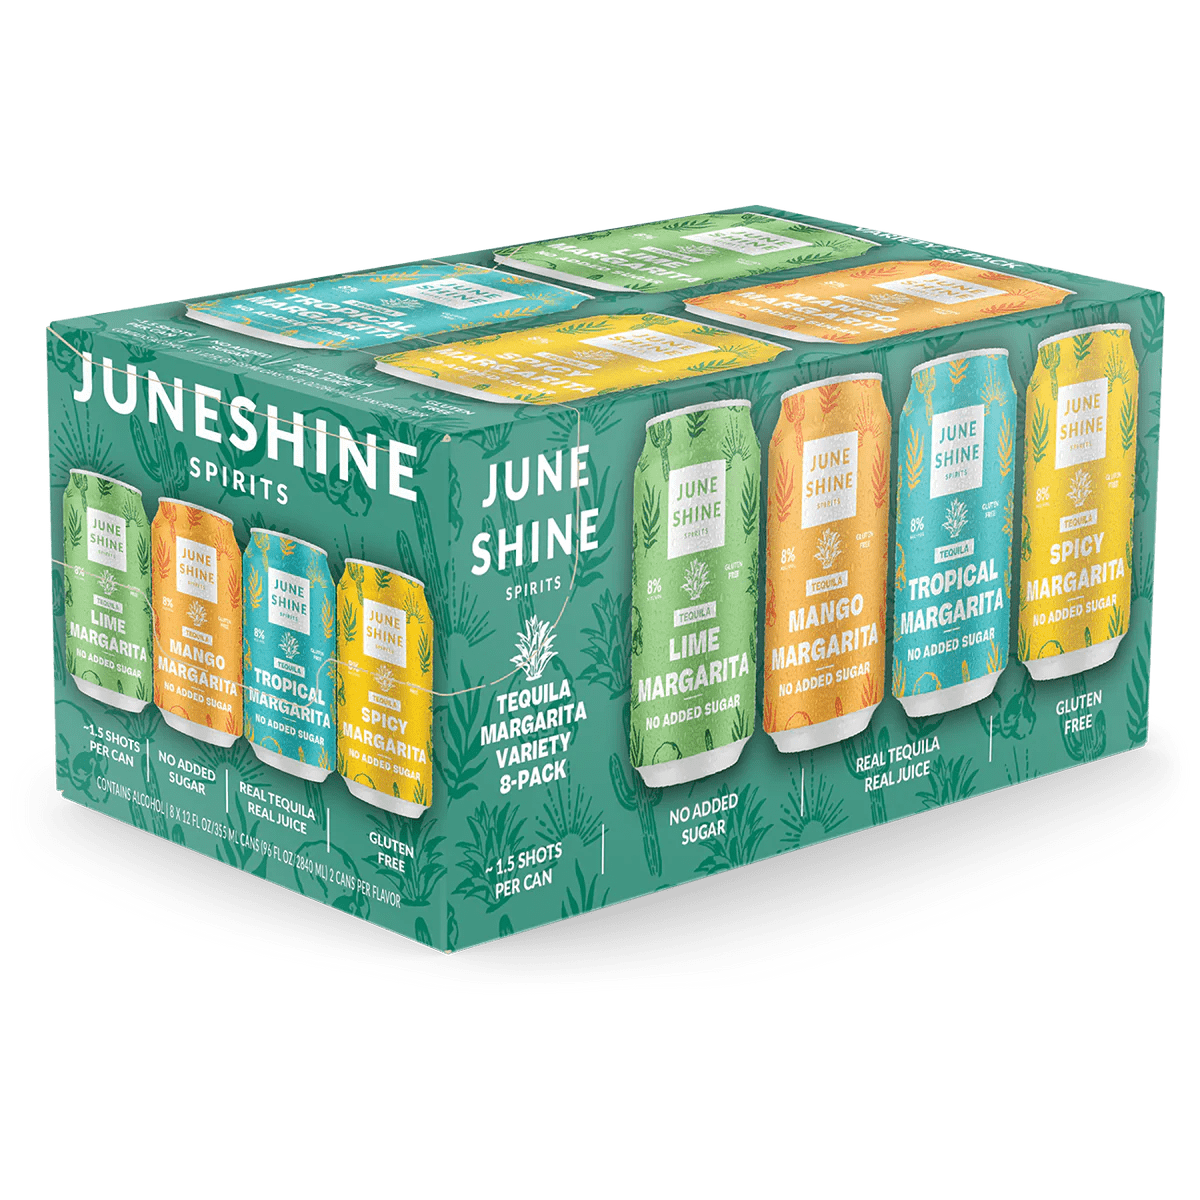 Juneshine Spirits Tequila Margarita Variety 8 Pack - Barbank